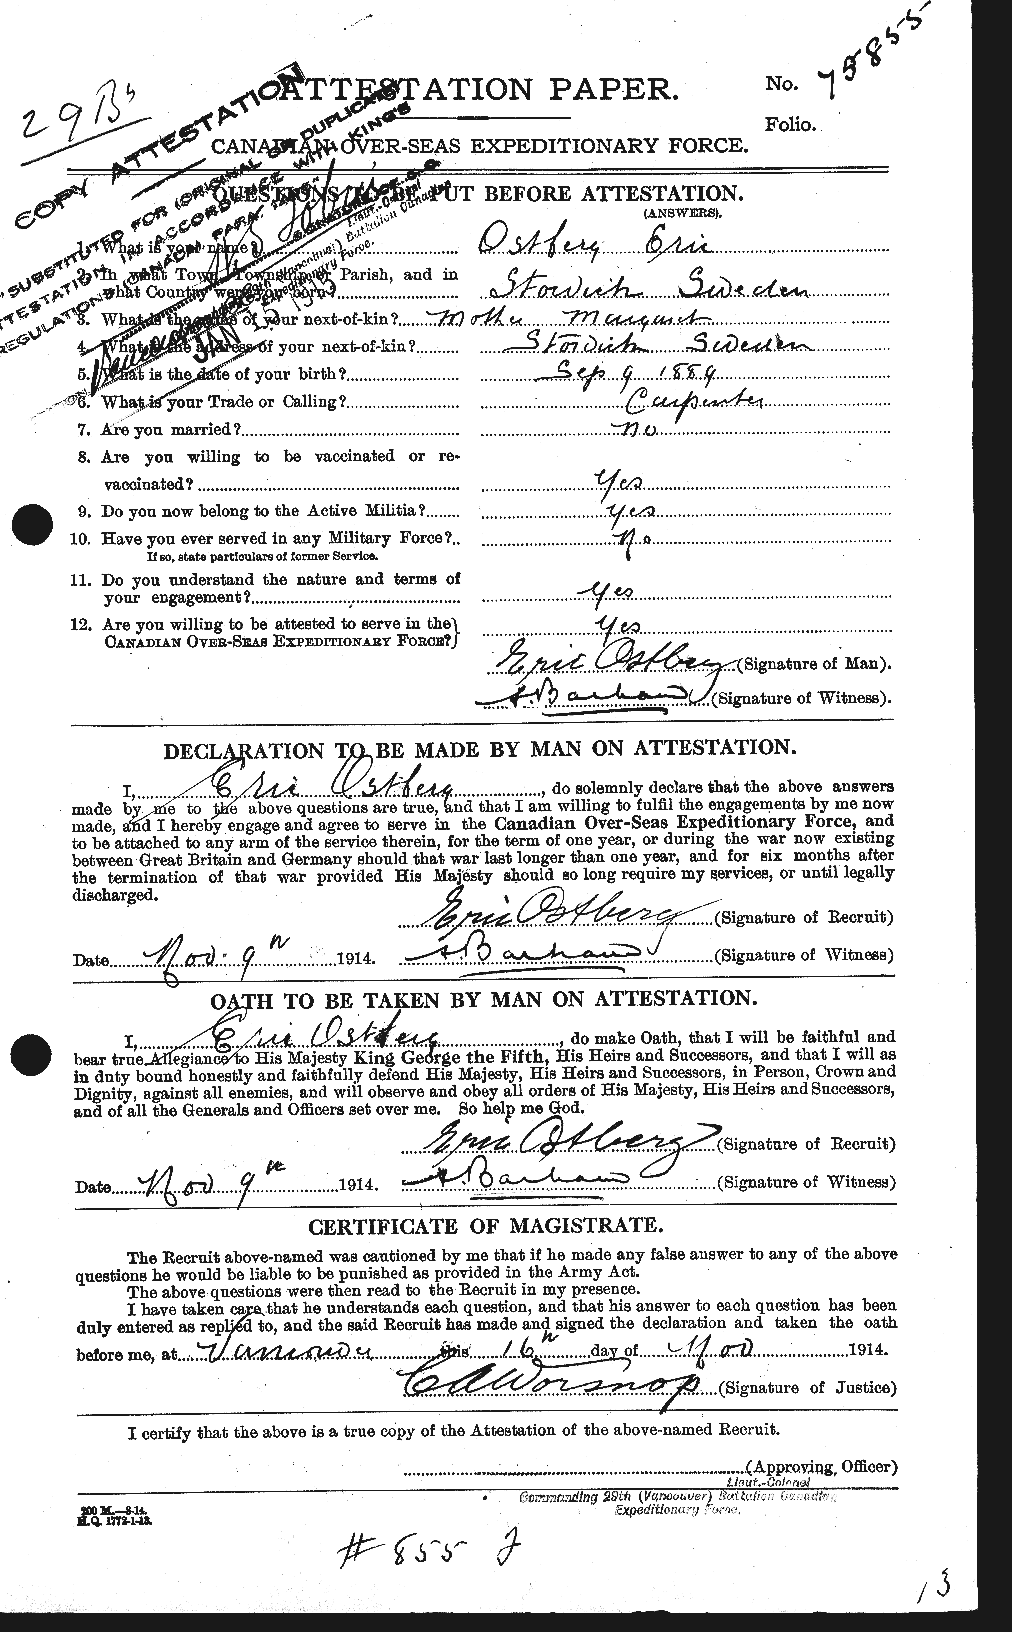 Dossiers du Personnel de la Première Guerre mondiale - CEC 560167a